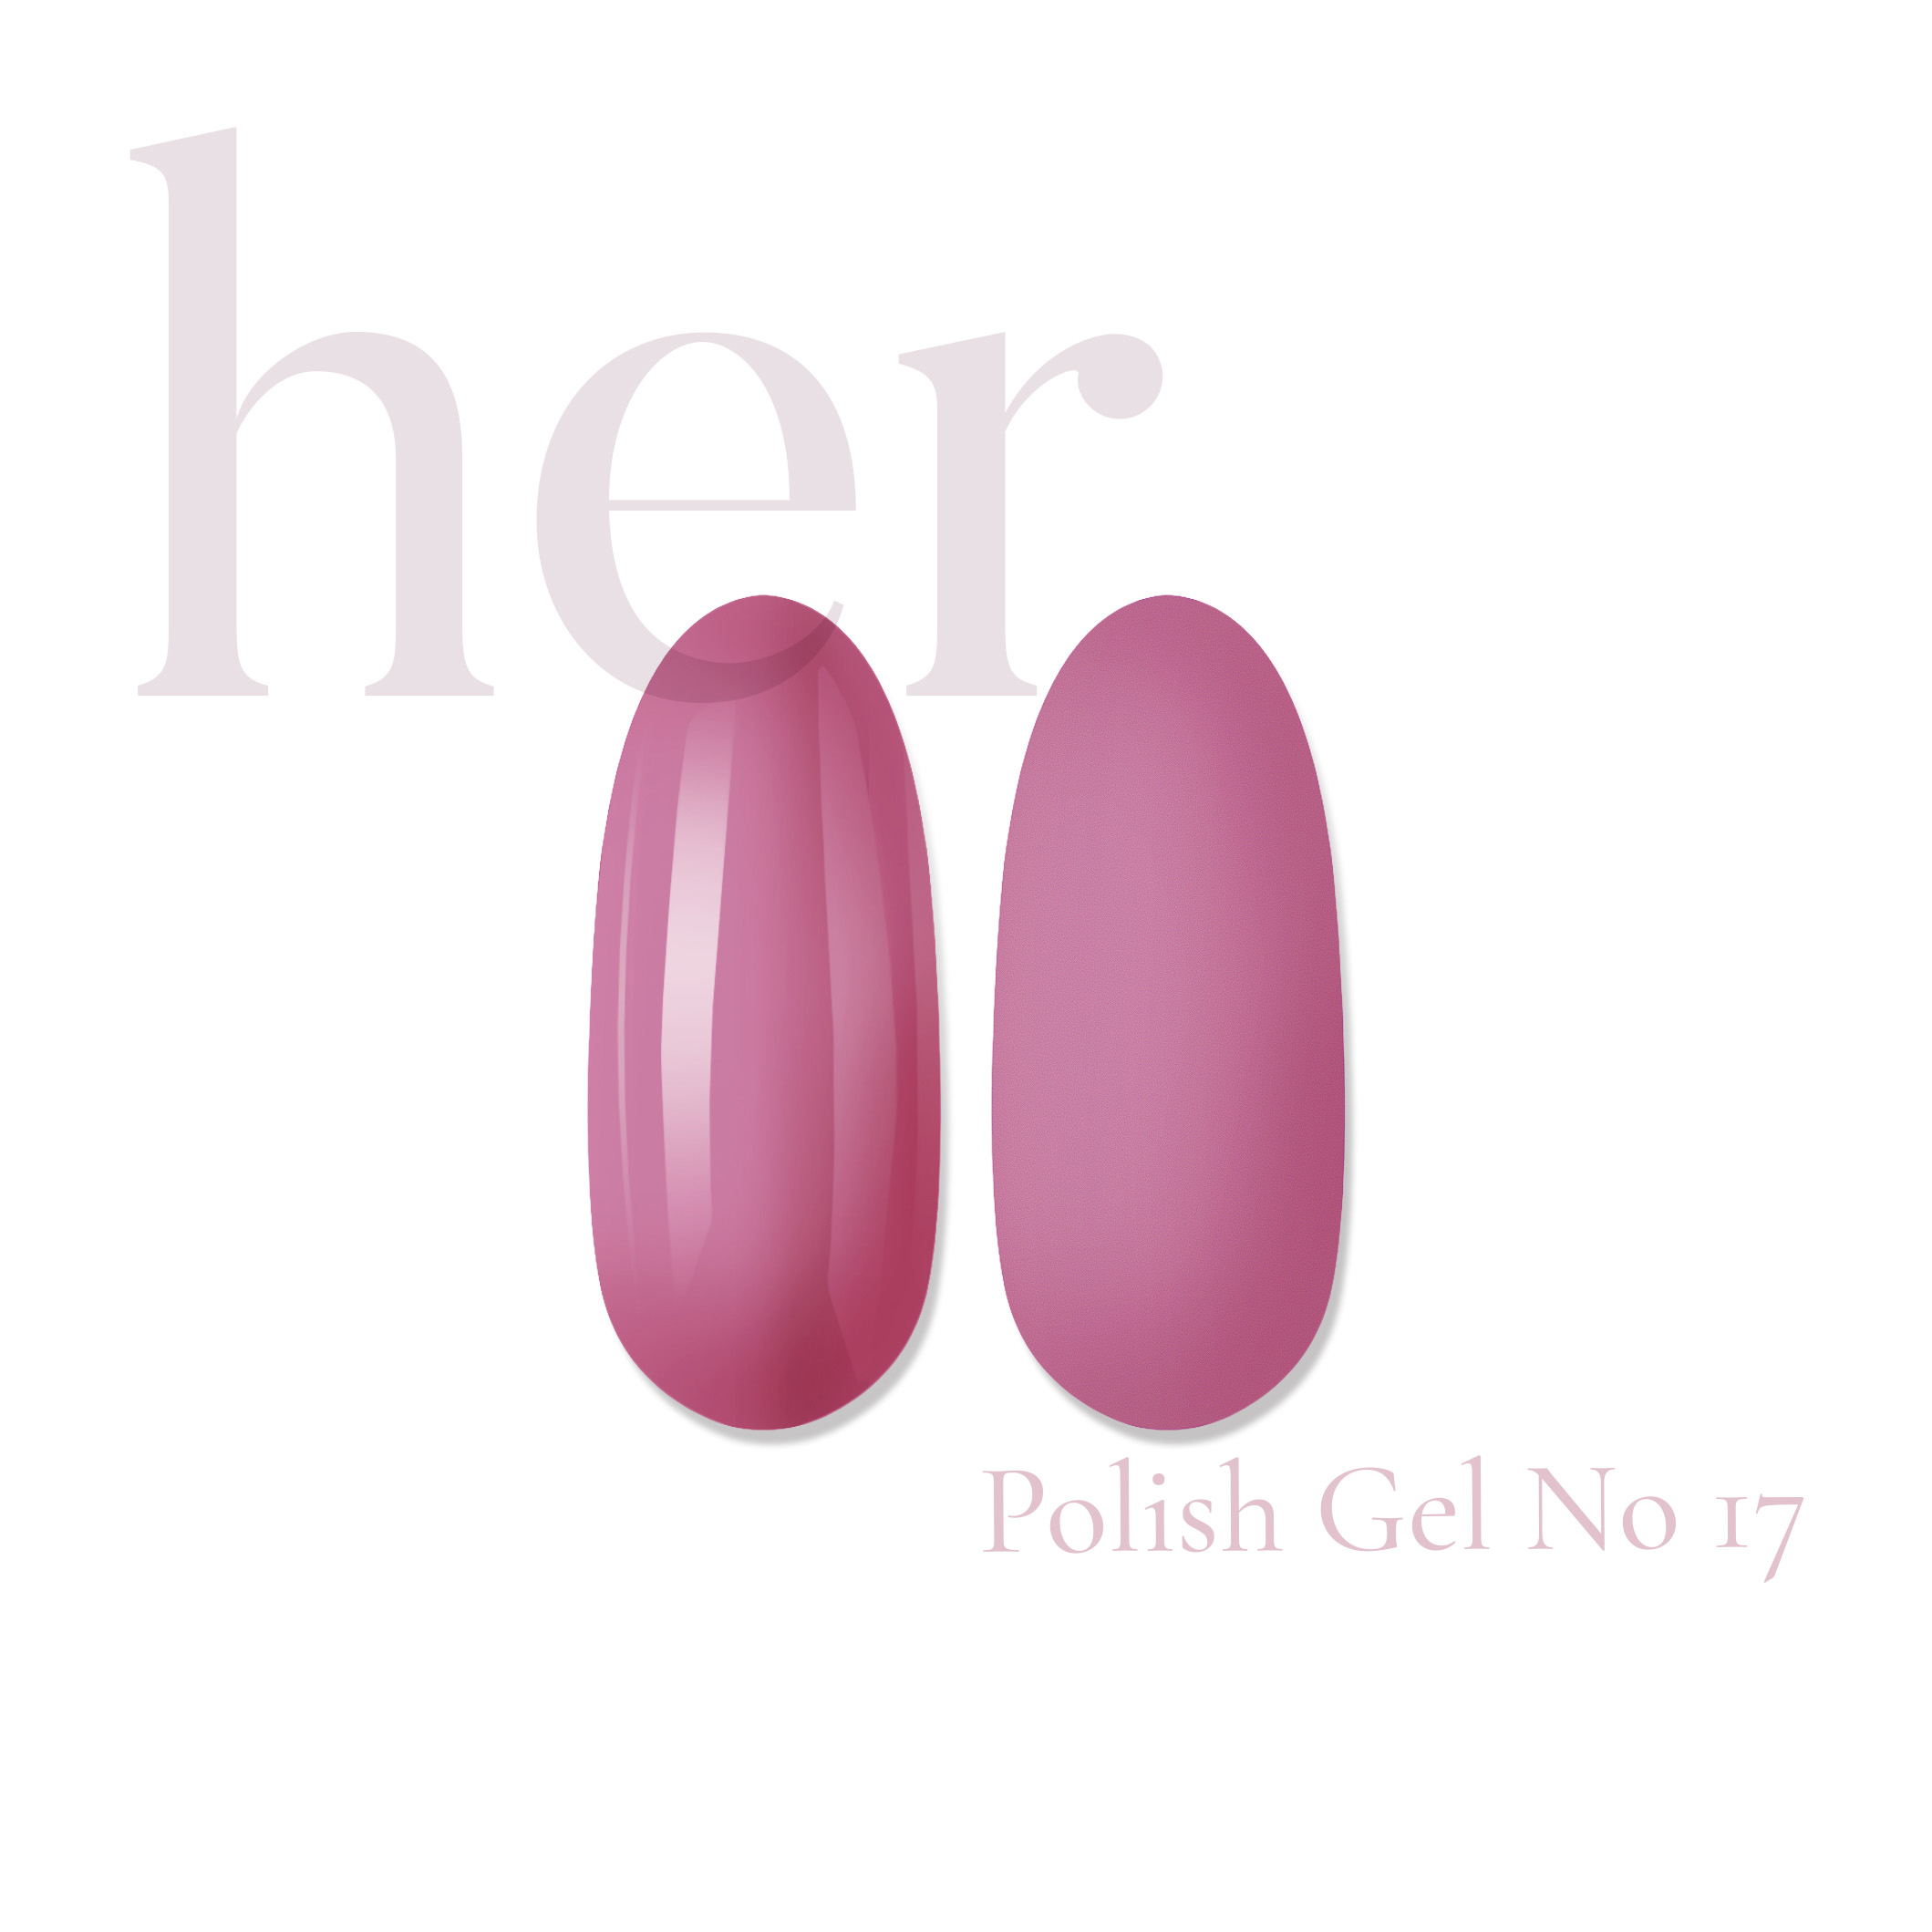 Polish Gel –  No 17